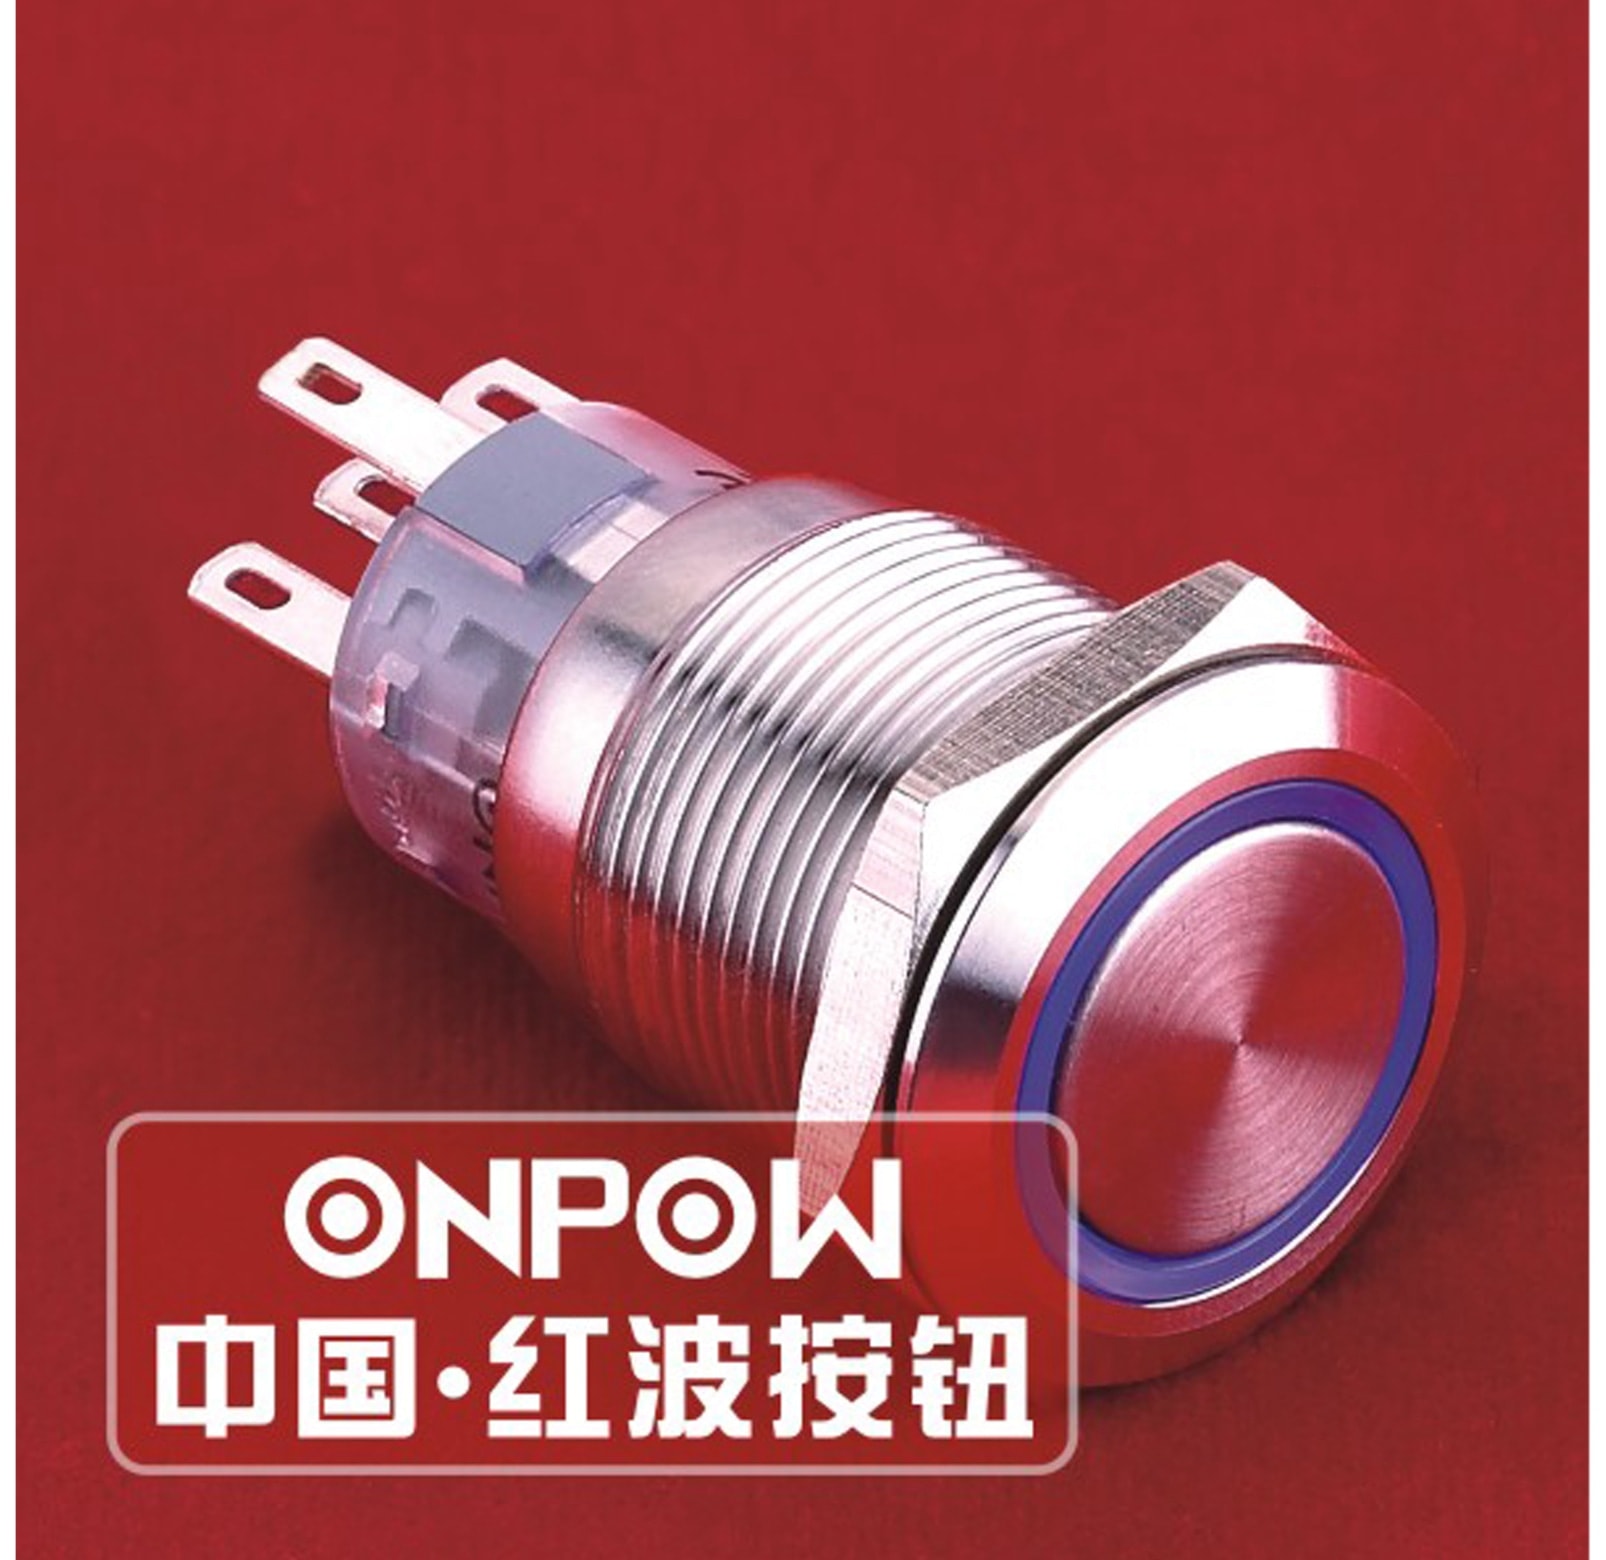 ONPOW Schalter, 24 V/DC, 1x Off/(On), Beleuchtung blau, Lötanschluss, flach rund, Edelstahl, 19 mm